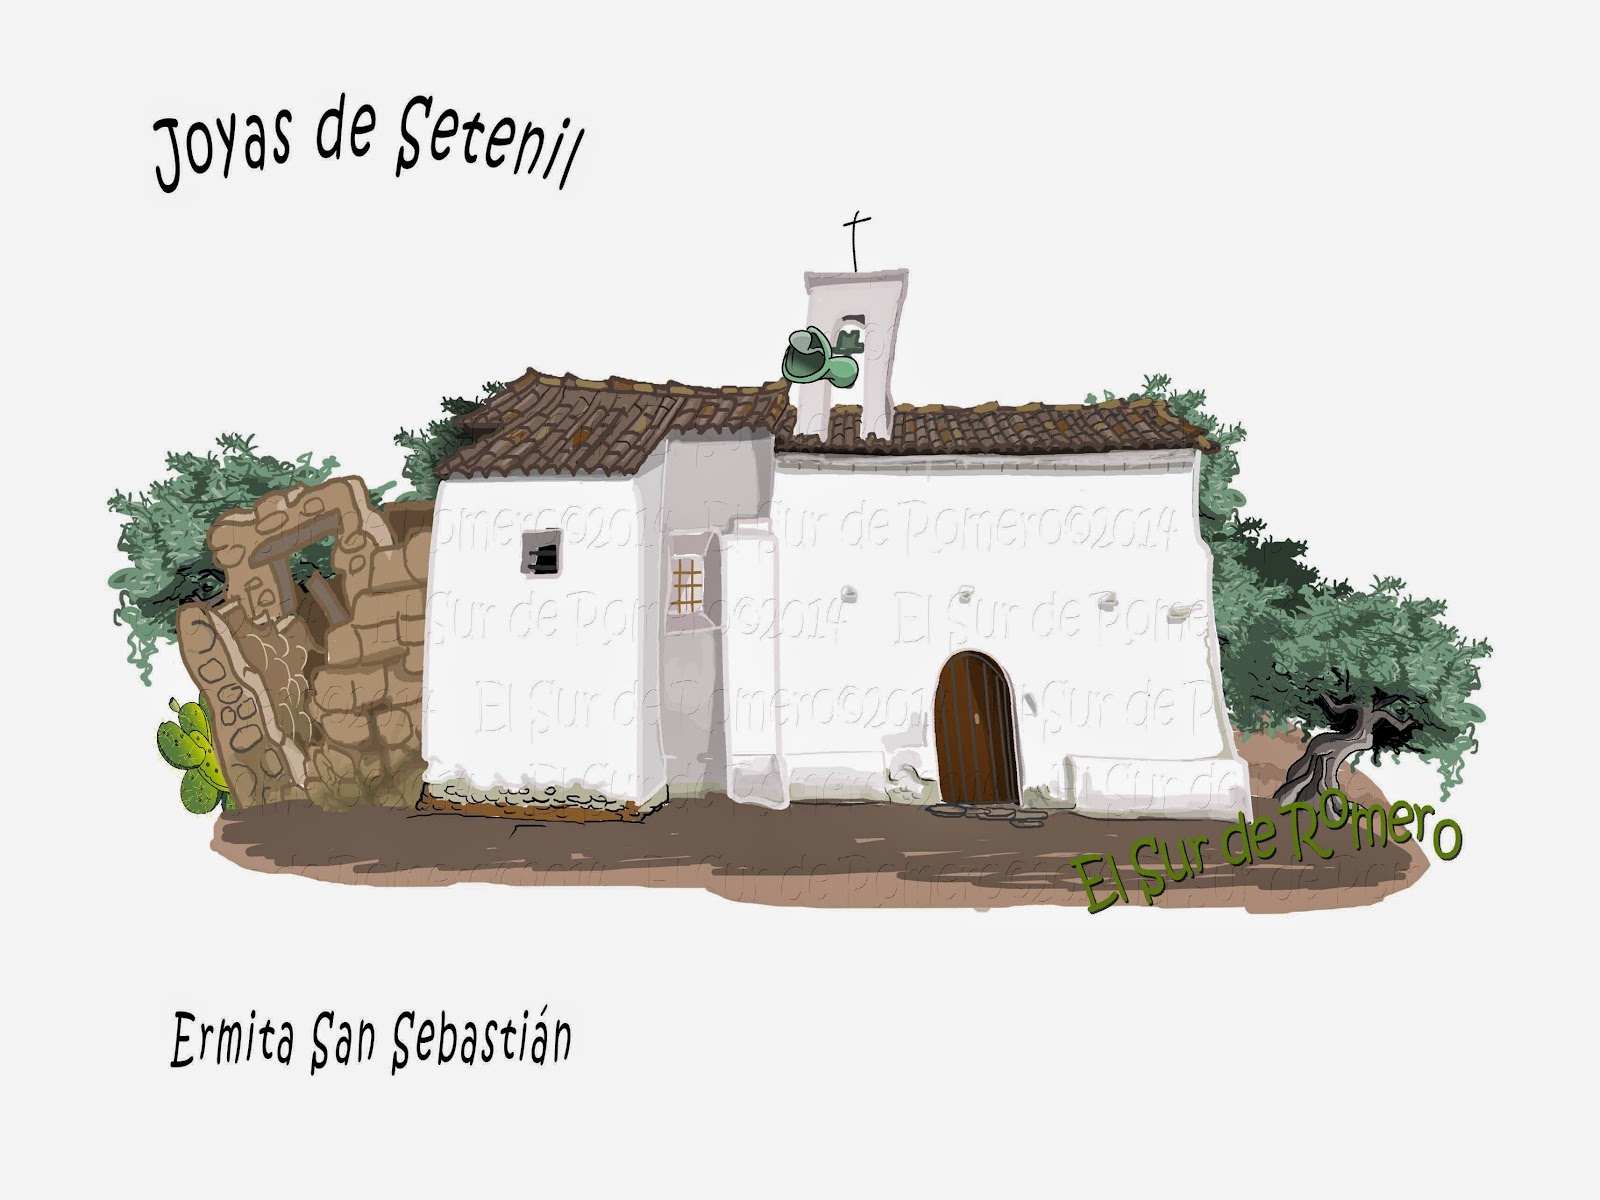 <img src="Ermita San Sebastian.jpg" alt="dibujos de Setenil"/>